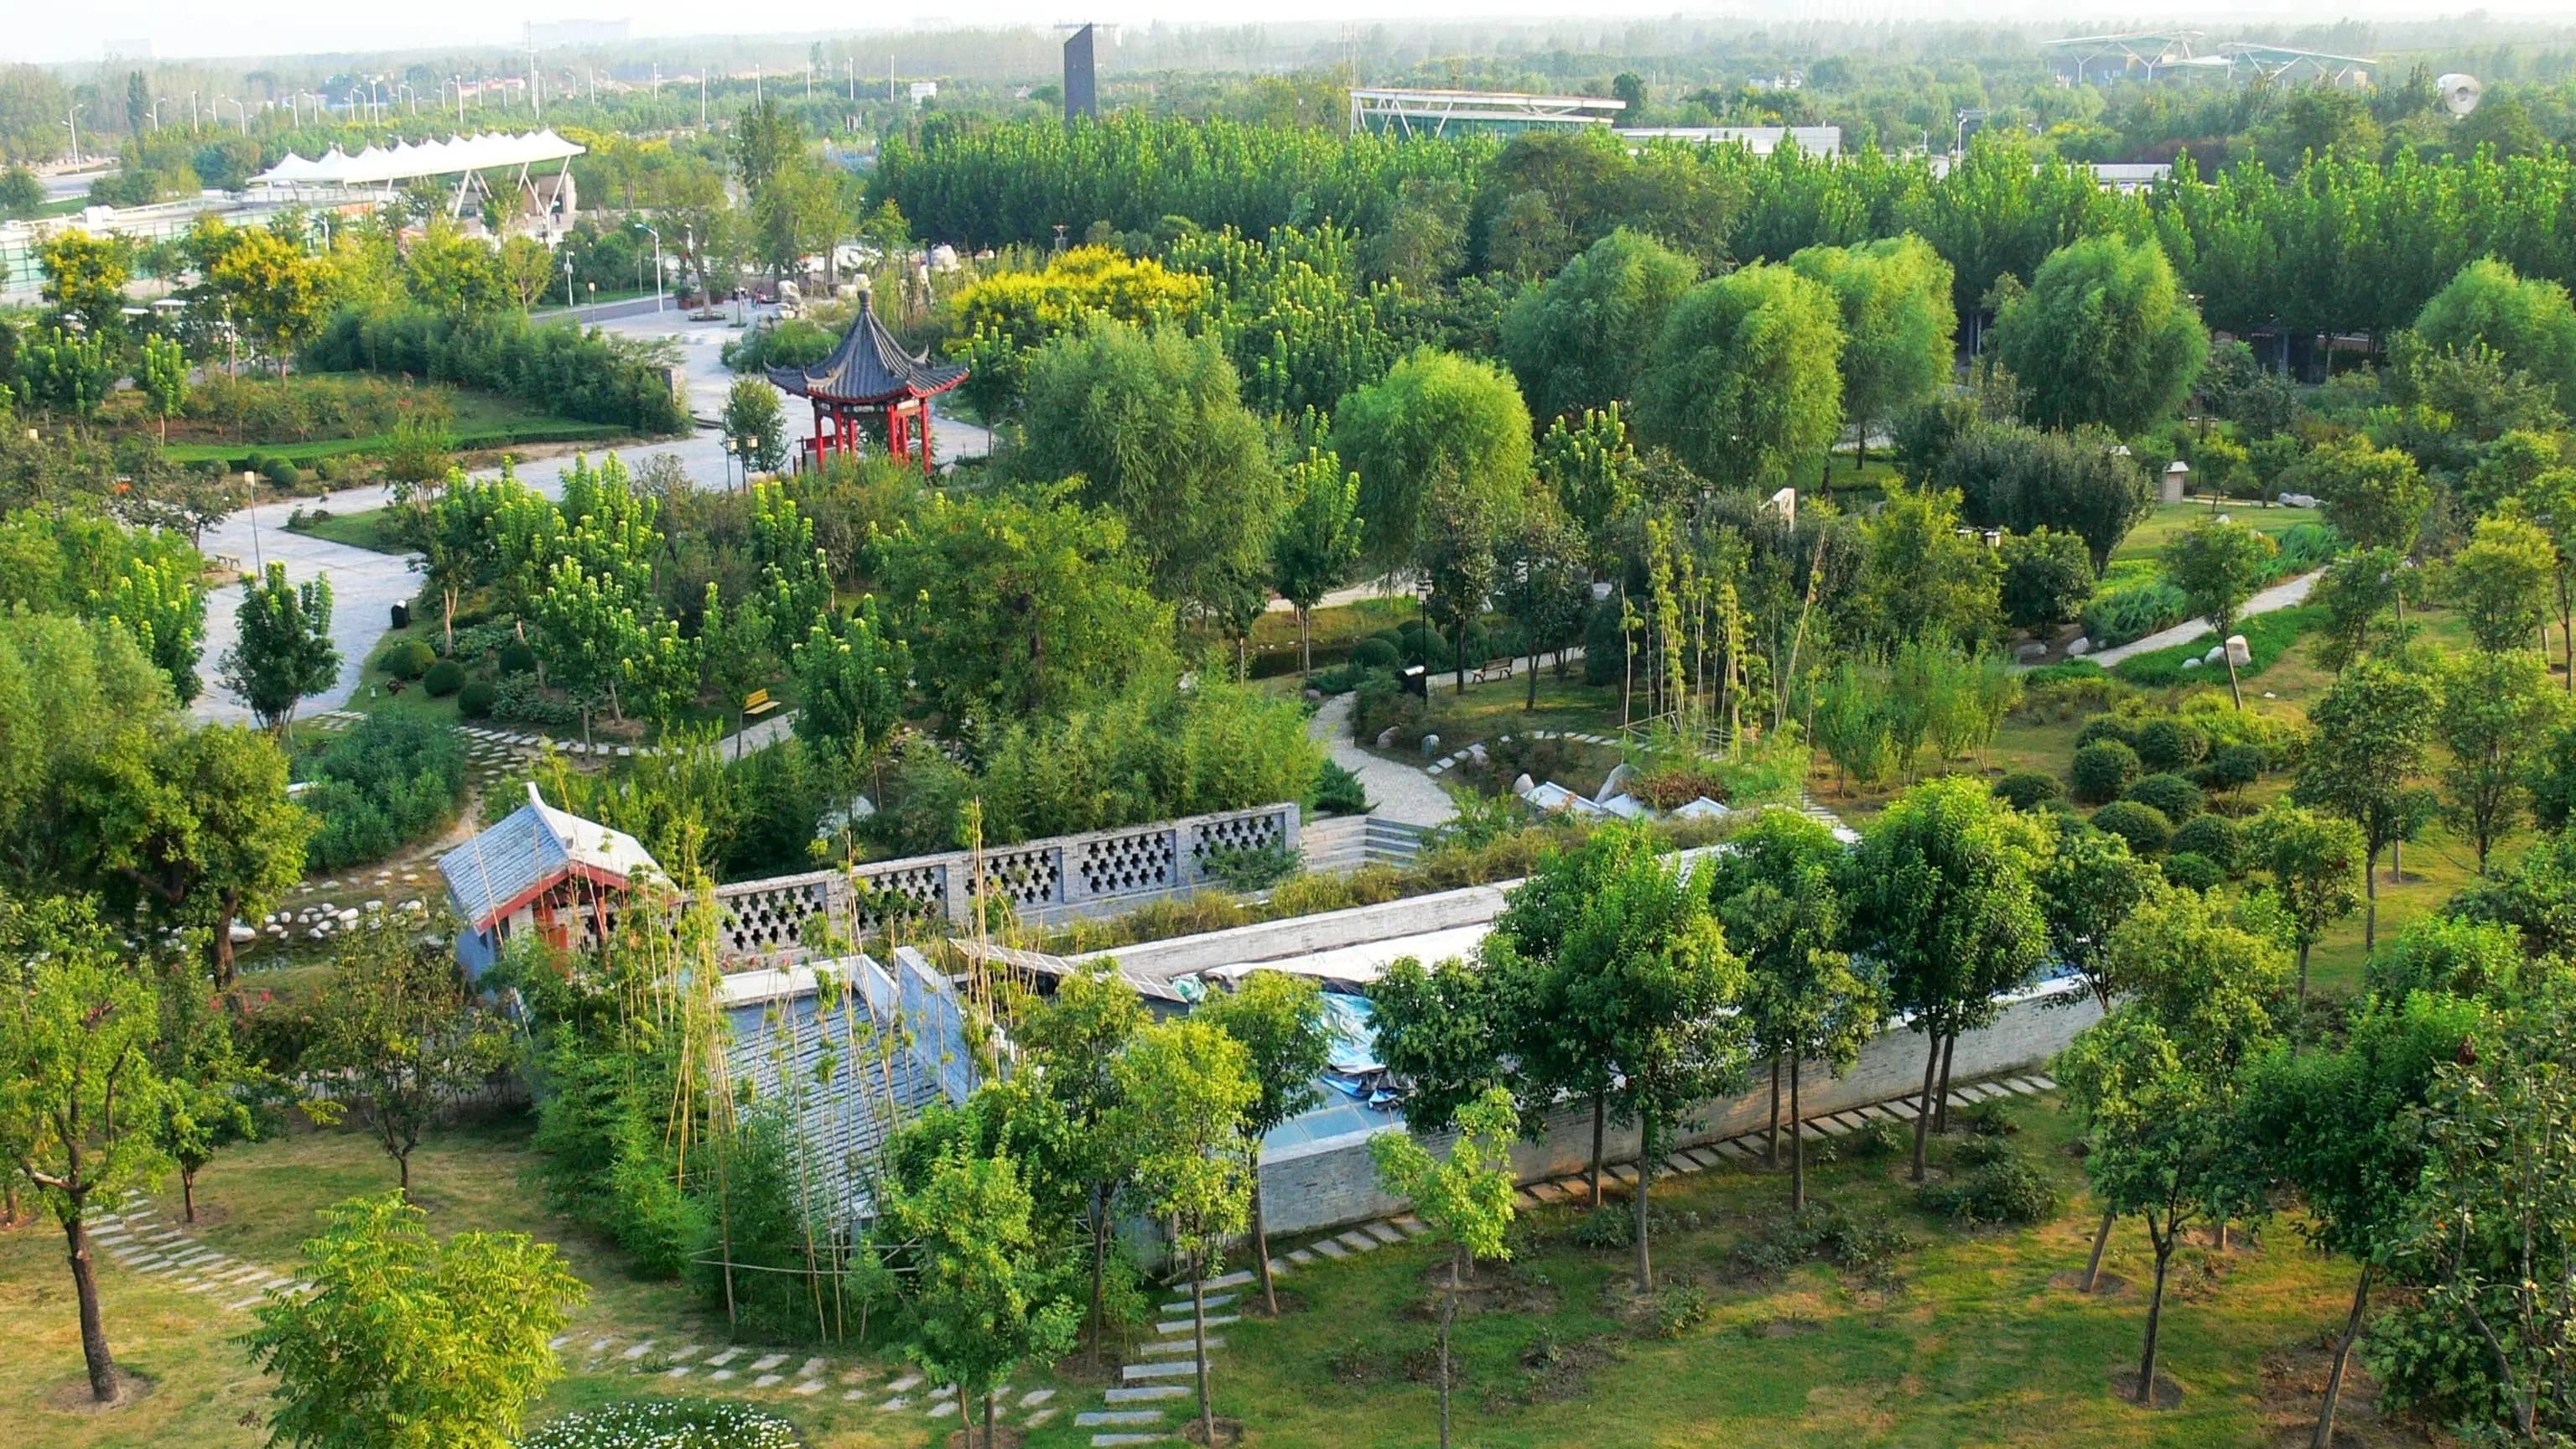 郑州绿博园,一个充满生态魅力和人文关怀的旅游胜地 这座国家4a级旅游